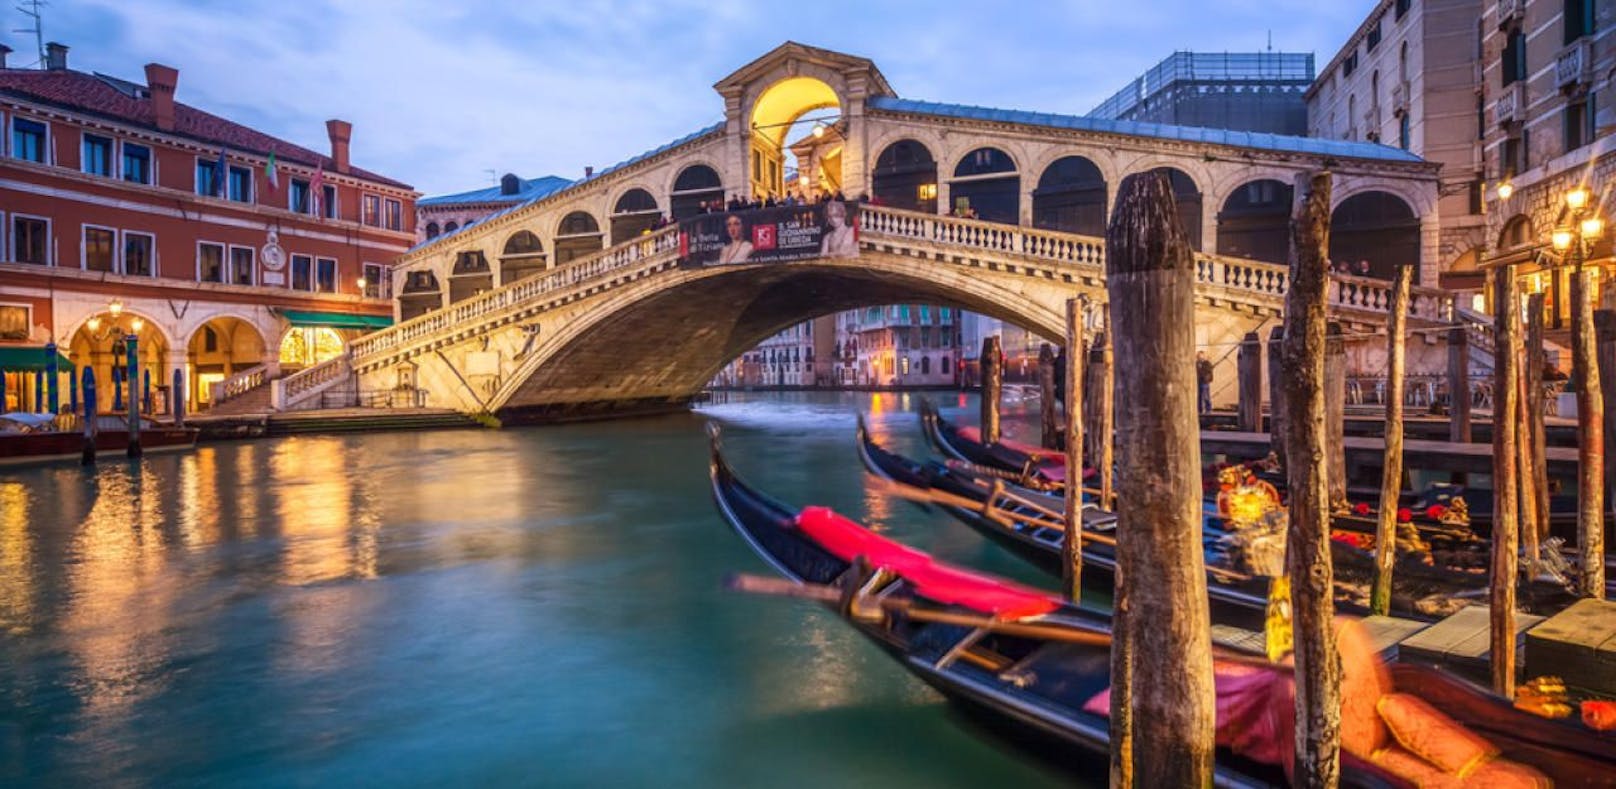 Die Rialto-Brücke in Venedig gehört zu den bekanntesten Sehenswürdigkeiten der Lagunenstadt.